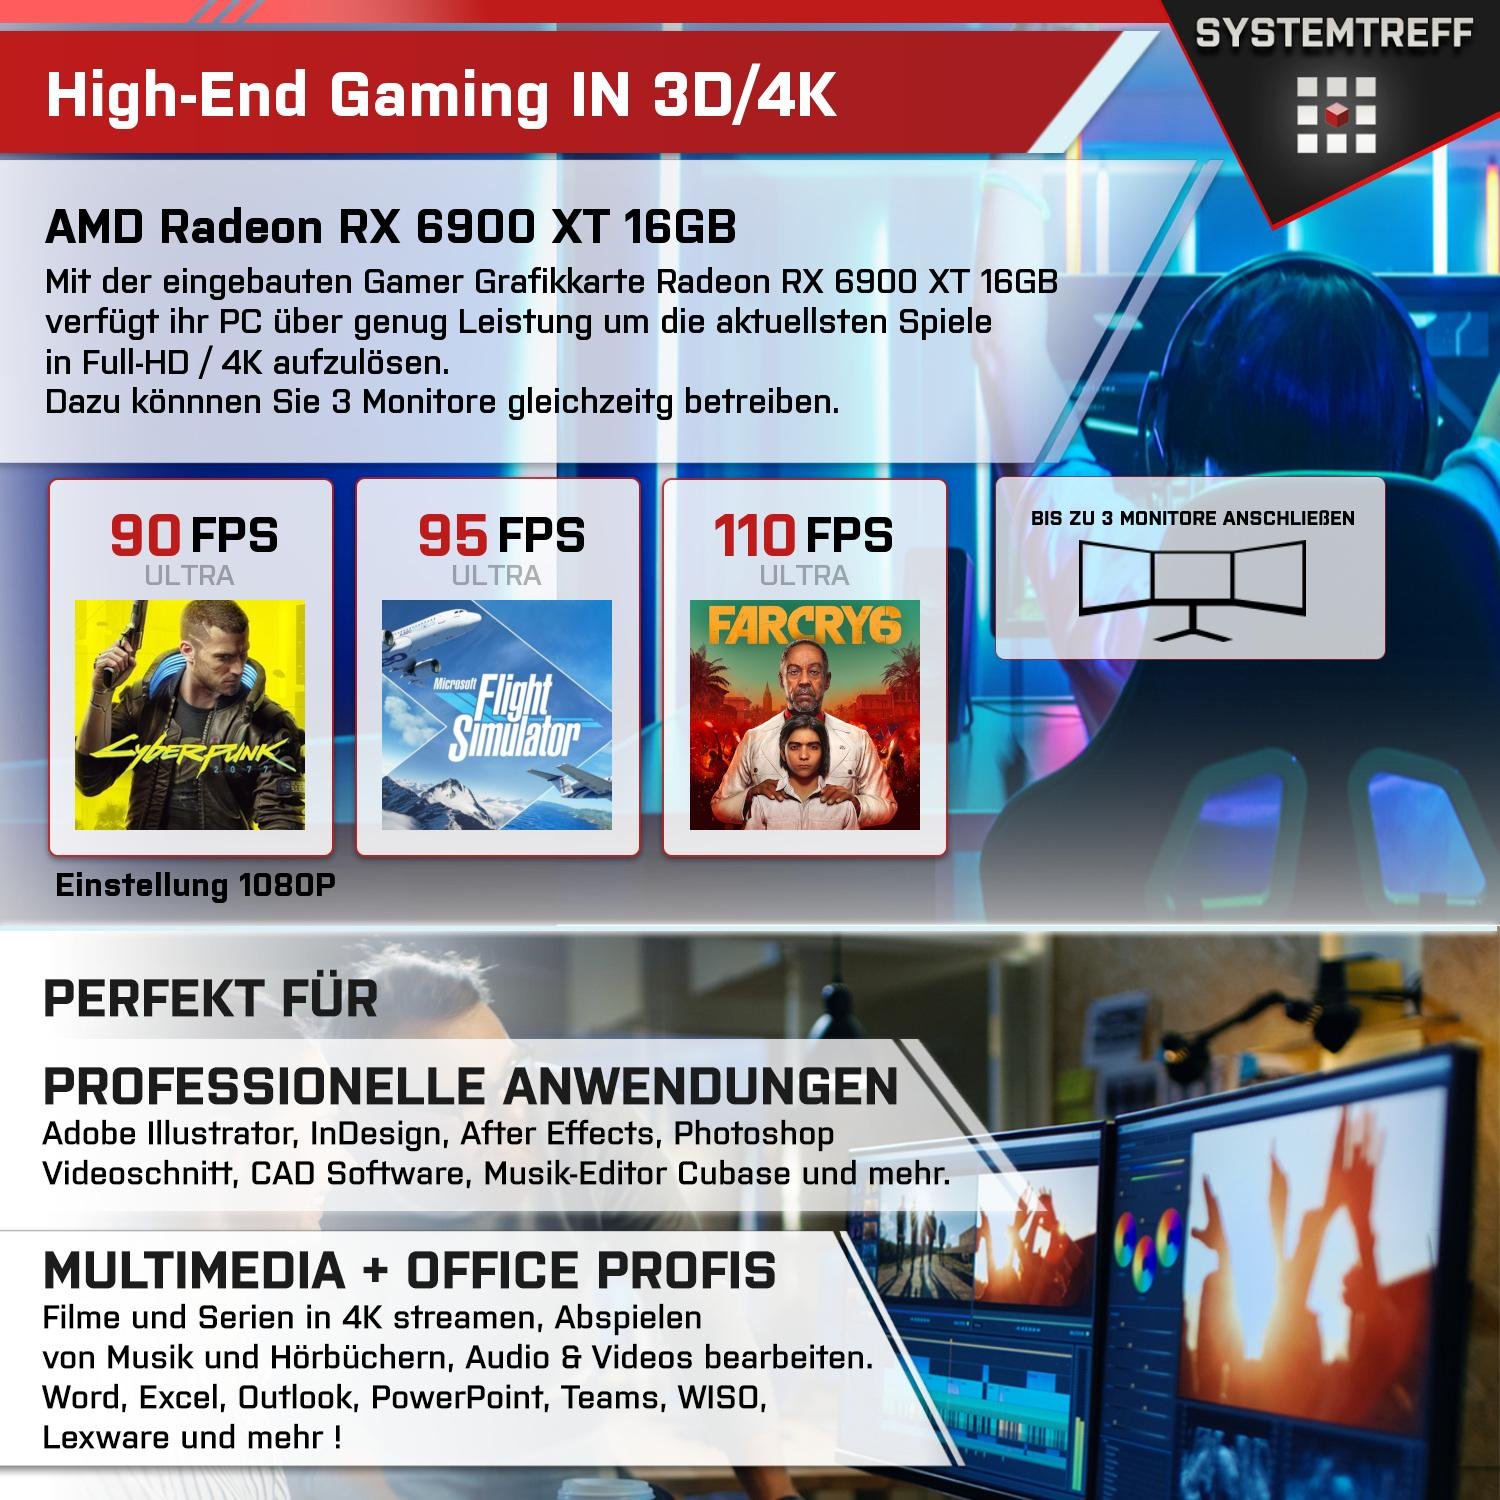 SYSTEMTREFF Gaming Komplett AMD 5700X, Prozessor, Komplett 16GB mSSD, 5700X Radeon 32 GDDR6, GB mit AMD Ryzen GB RX GB XT 16 1000 RAM, 7 6900 PC